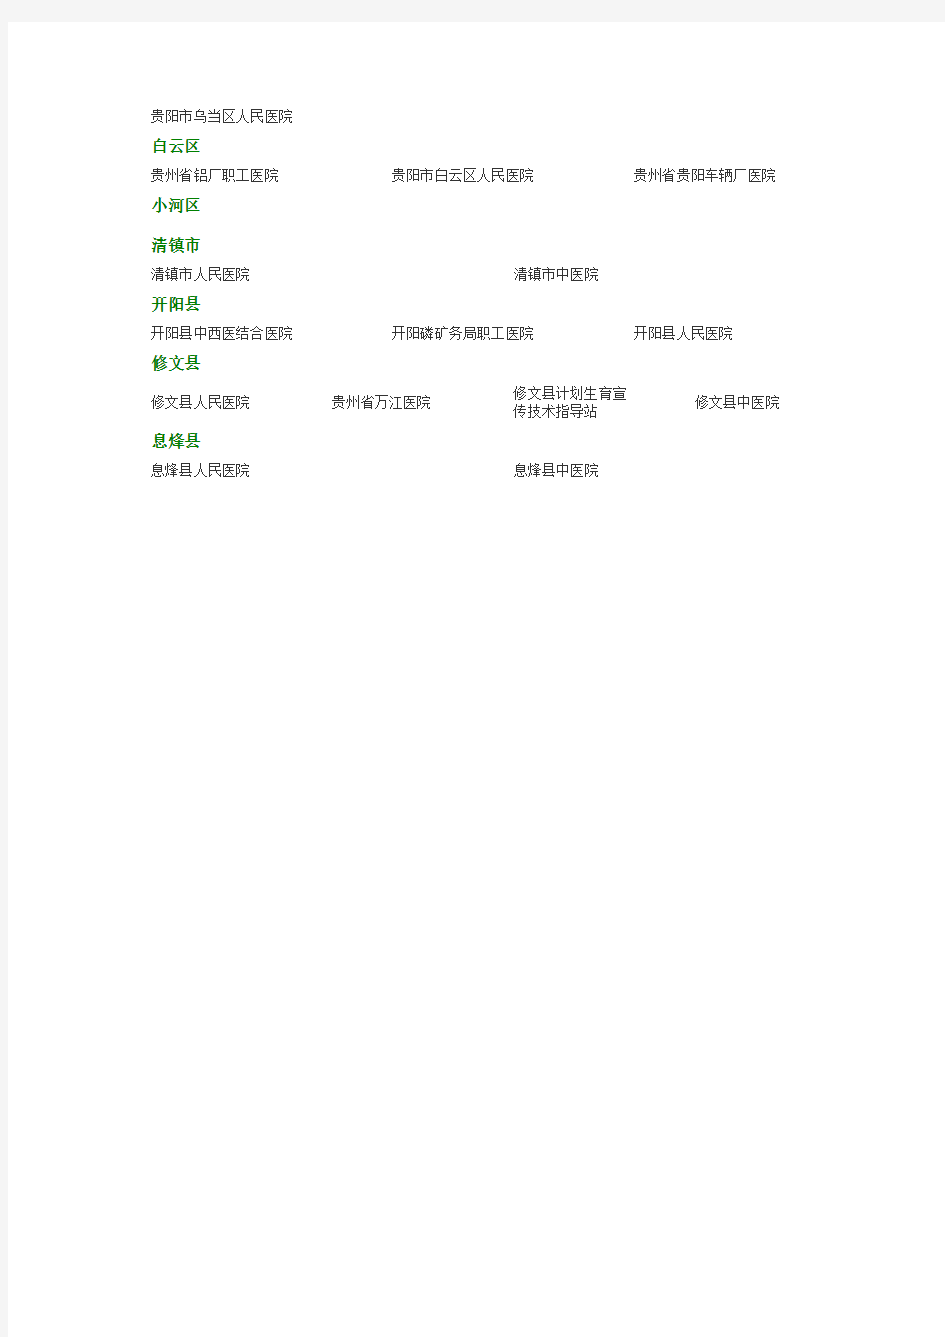 贵阳市医院名单(全部)